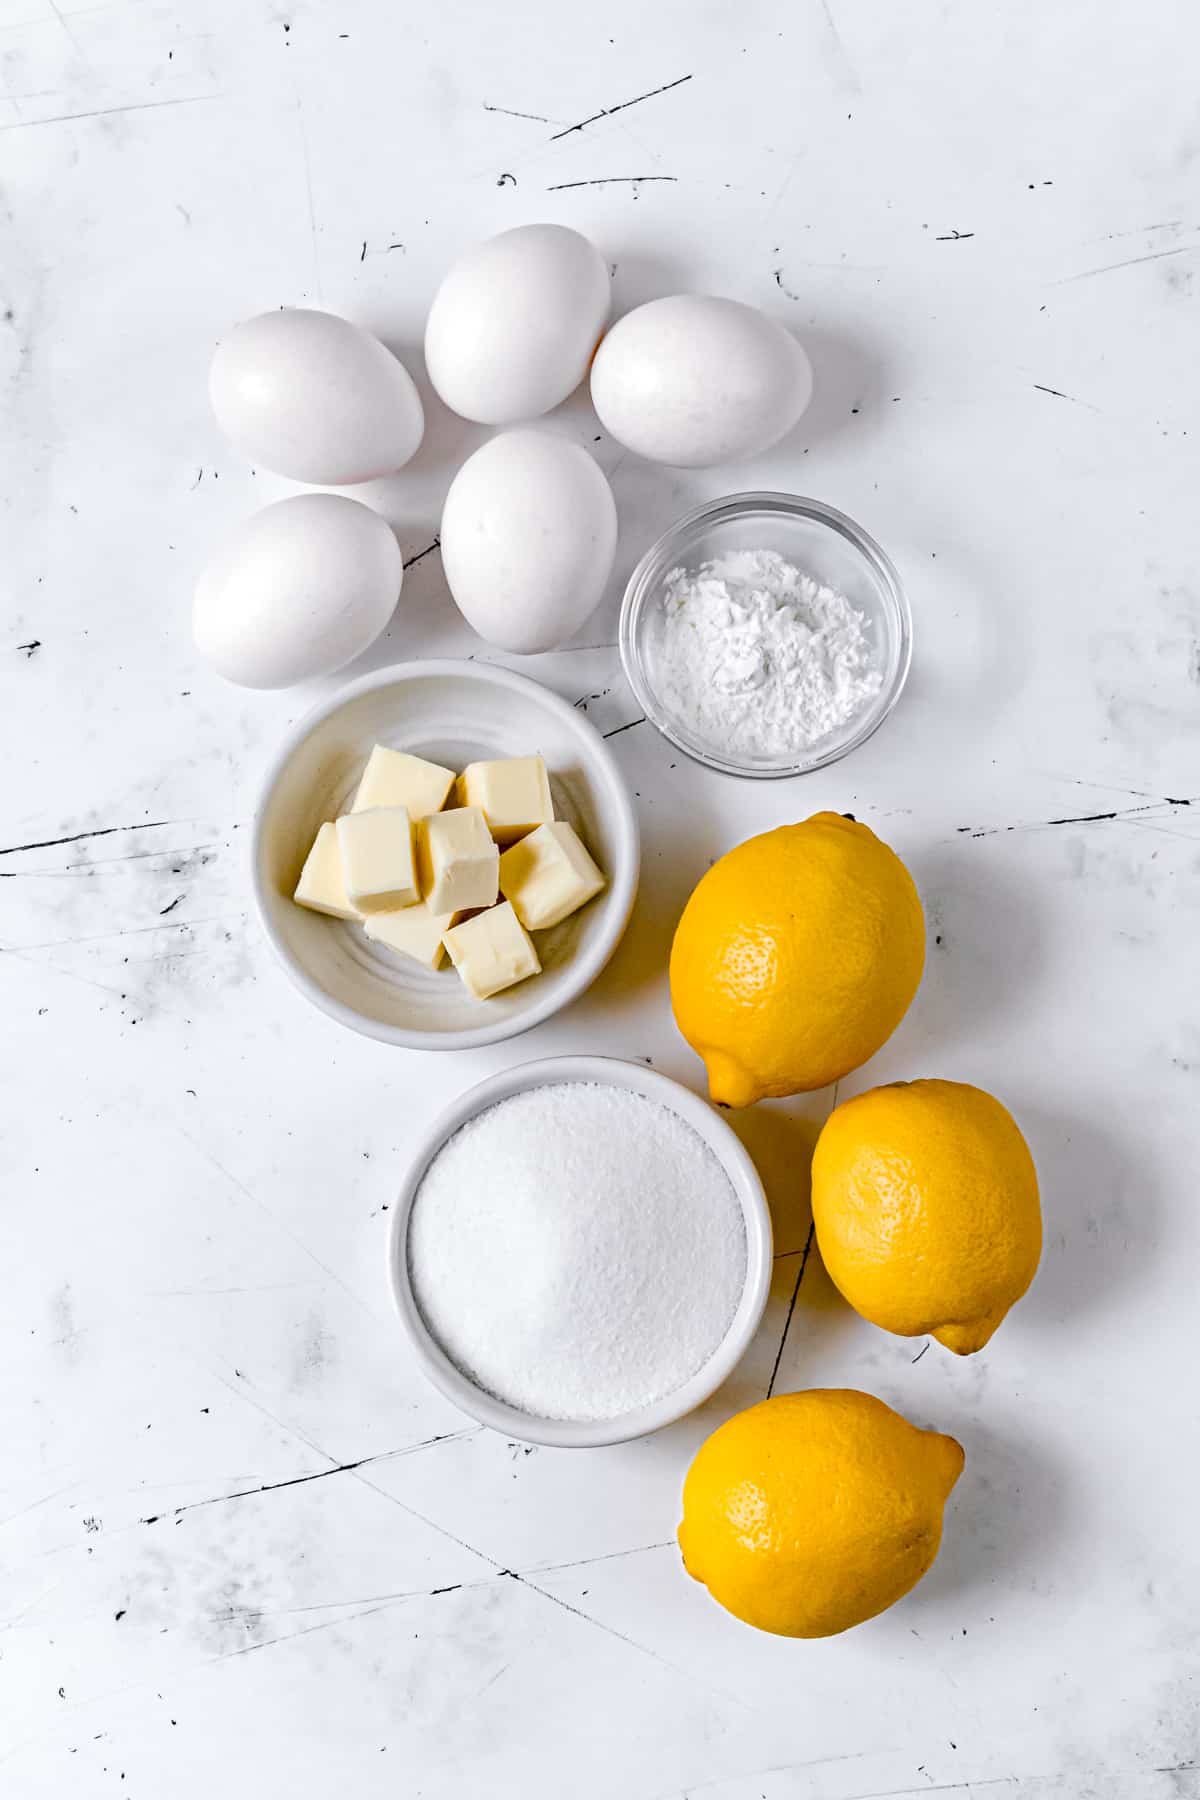 ingredients for lemon pie filling and swiss meringue.